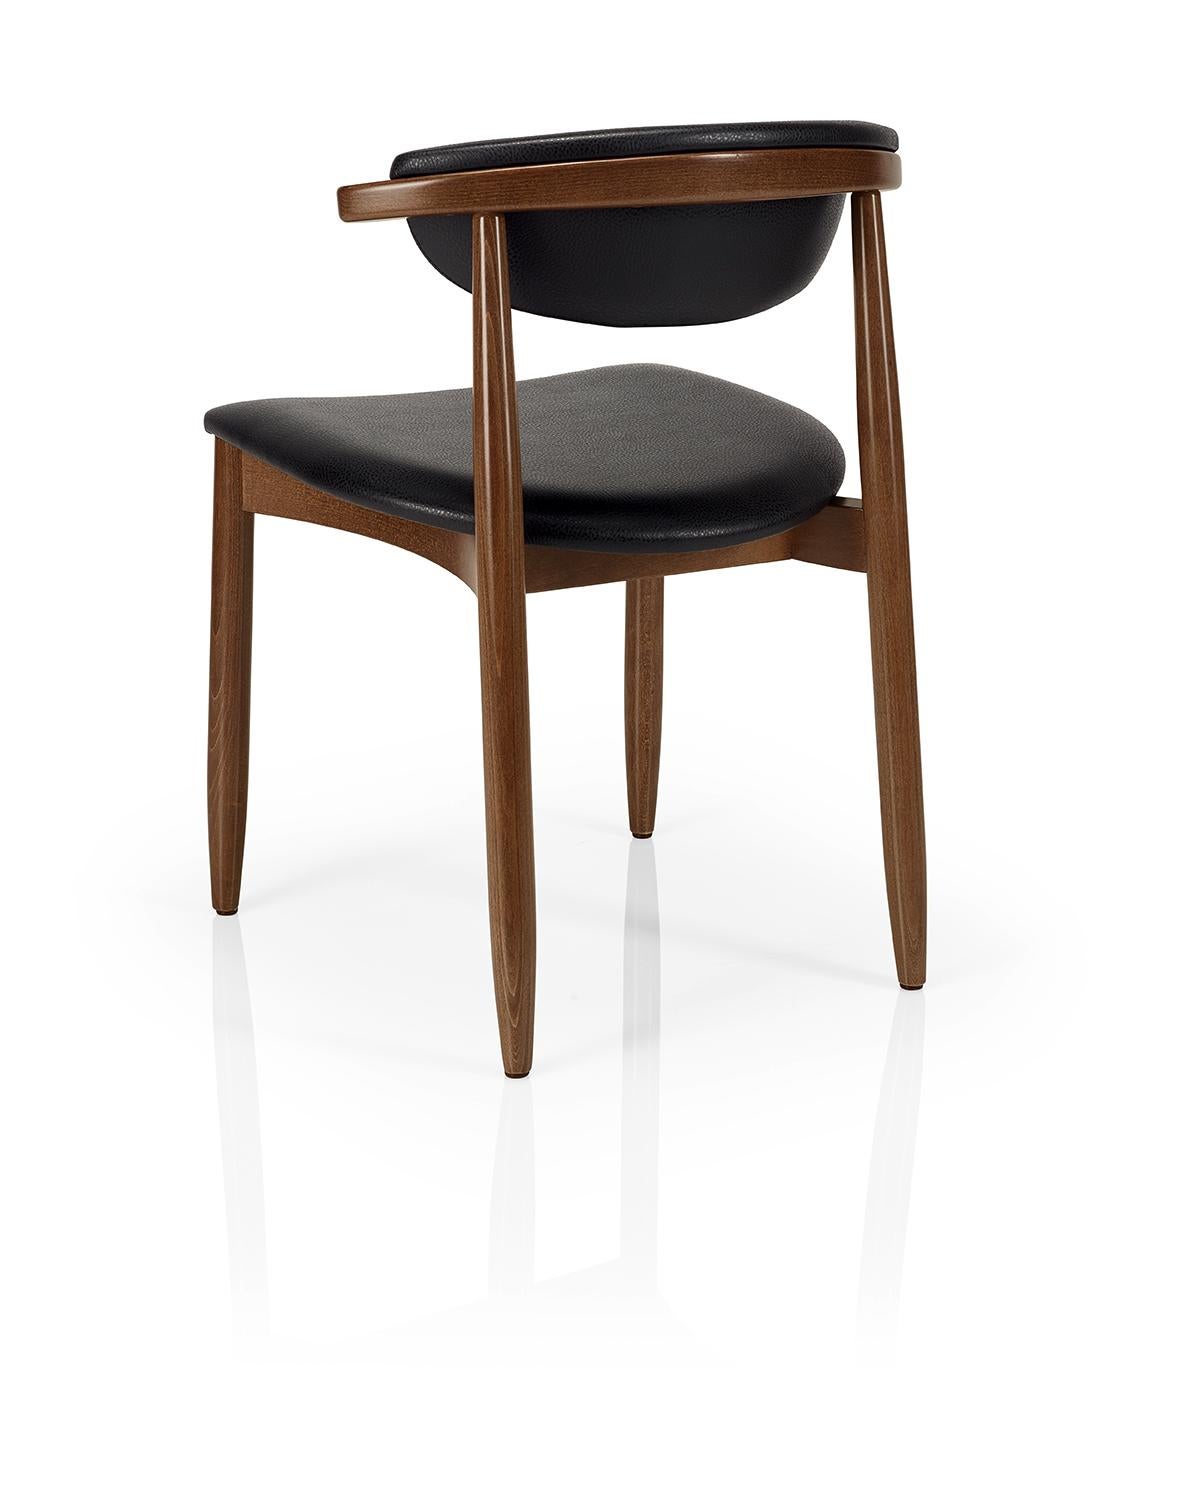 Chaises de salle à manger à dossier incurvé, de style moderne du milieu du siècle, rembourrées en simili-cuir noir. 
Fabriqué à partir d'un cadre en bois noir solide, il convient à une salle à manger ou une cuisine décontractée ou formelle. 
Cette